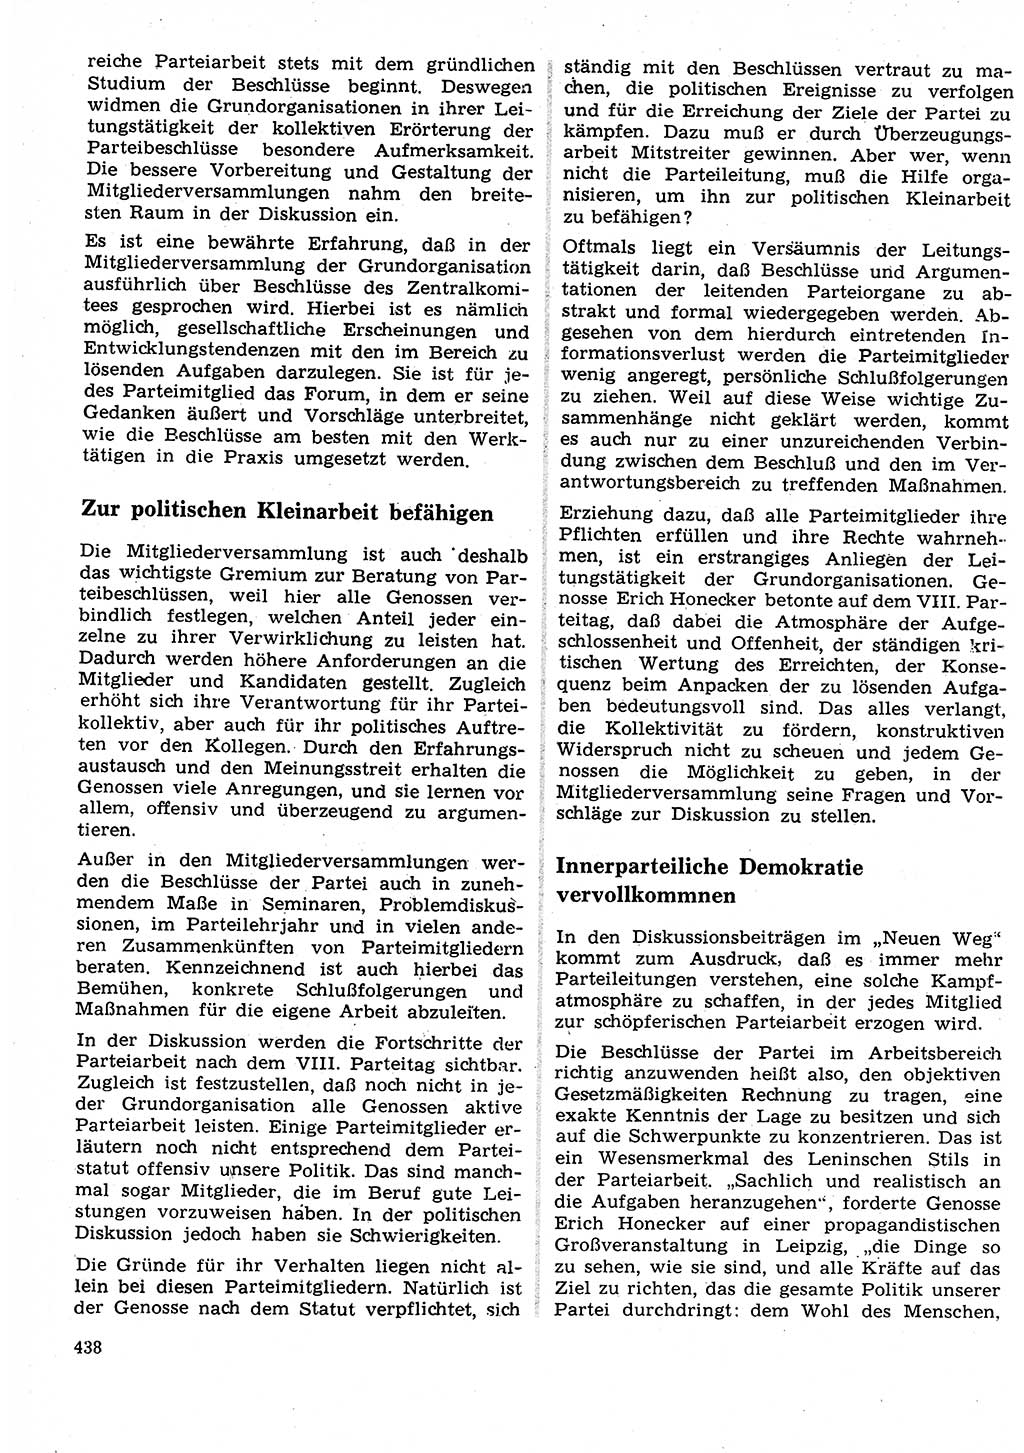 Neuer Weg (NW), Organ des Zentralkomitees (ZK) der SED (Sozialistische Einheitspartei Deutschlands) für Fragen des Parteilebens, 27. Jahrgang [Deutsche Demokratische Republik (DDR)] 1972, Seite 438 (NW ZK SED DDR 1972, S. 438)